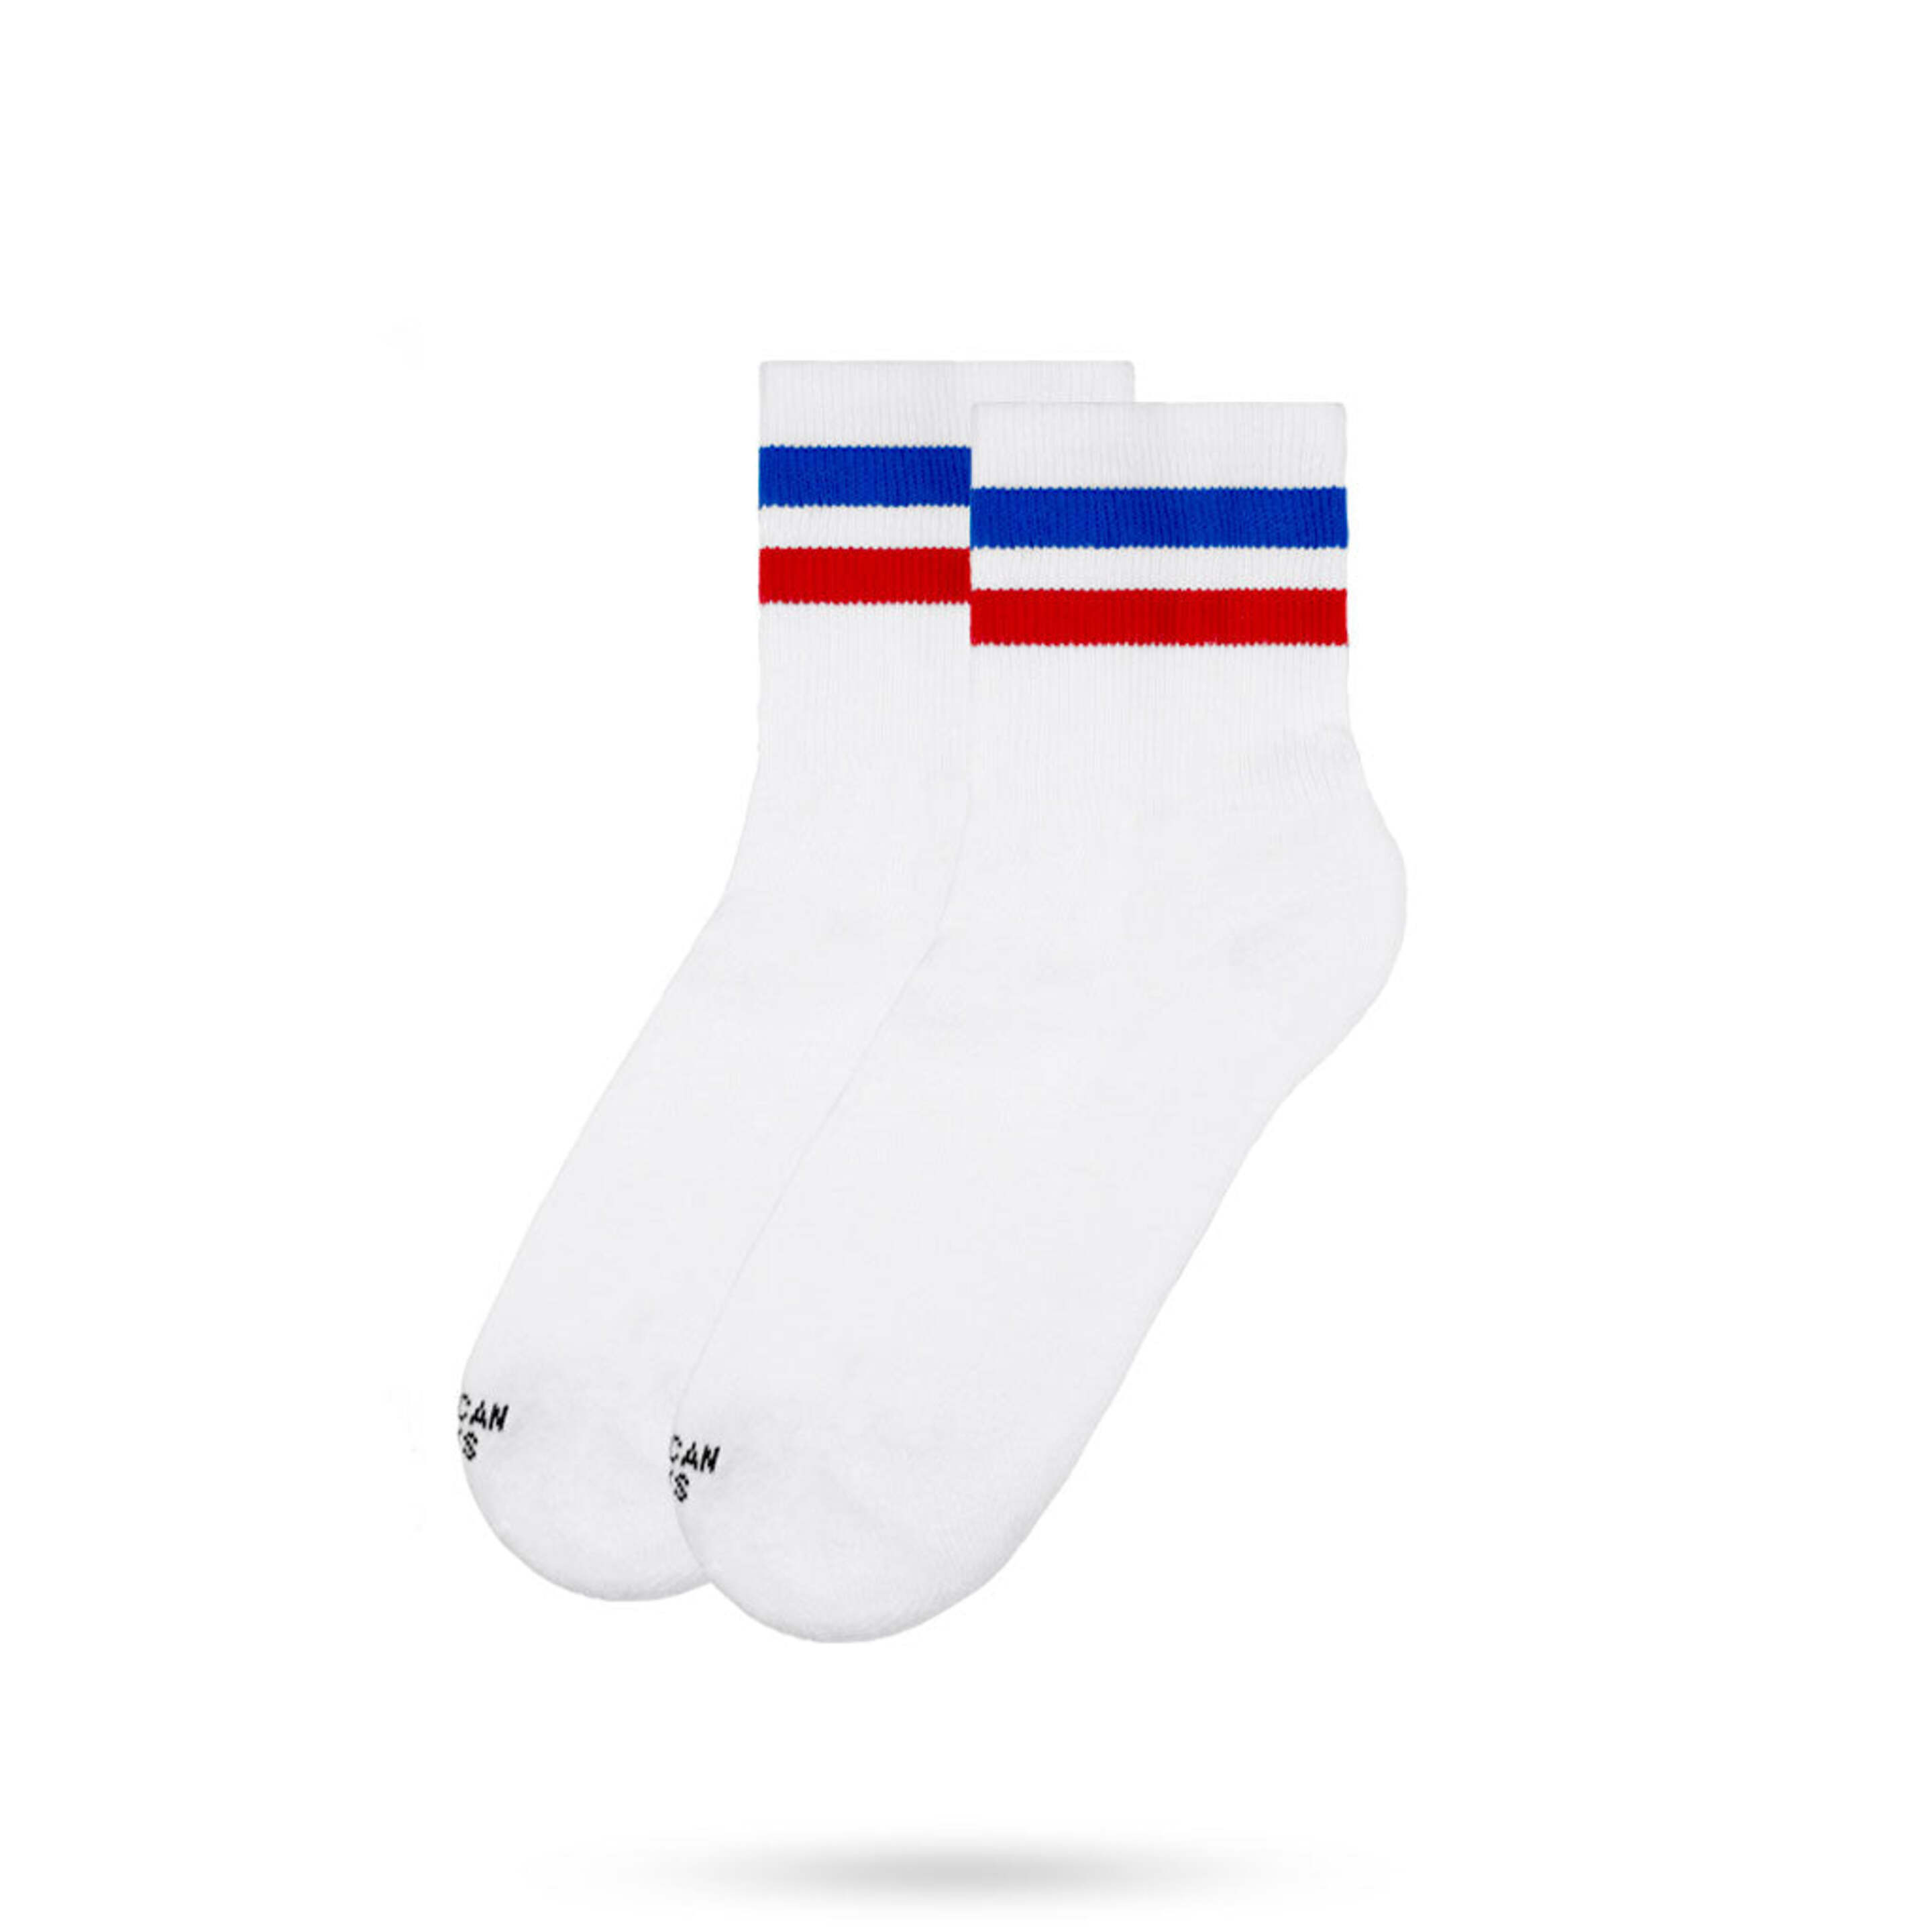 Calcetines American Socks   American Pride  Ankle High